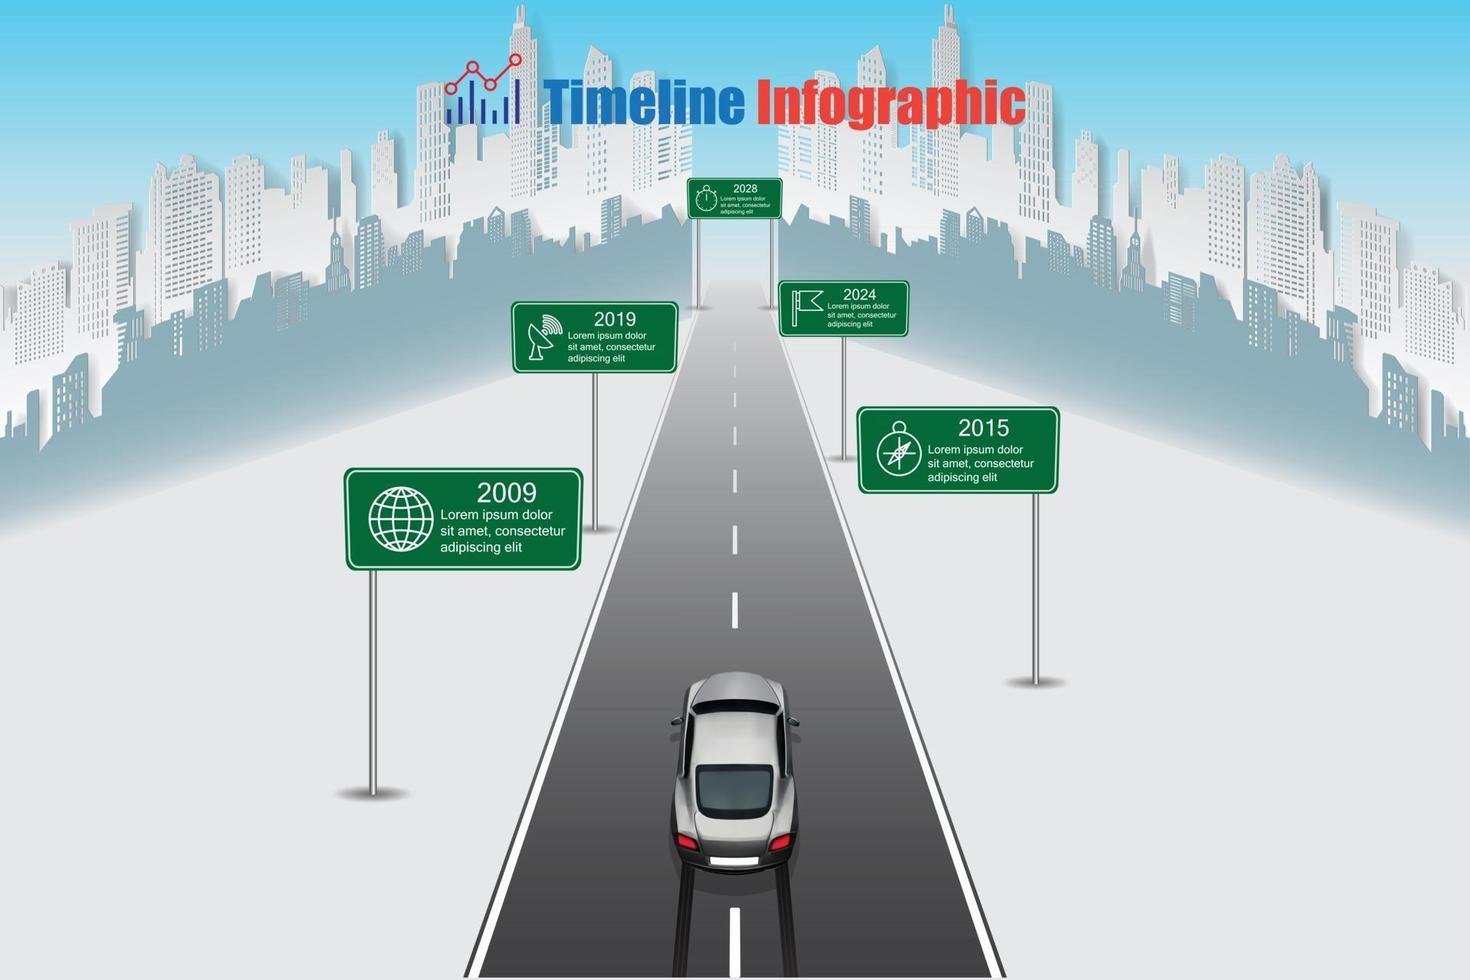 zakelijke auto stappenplan tijdlijn infographic stad ontworpen voor achtergrond sjabloon mijlpaal element modern diagram proces technologie digitale marketing gegevens presentatie grafiek vectorillustratie vector